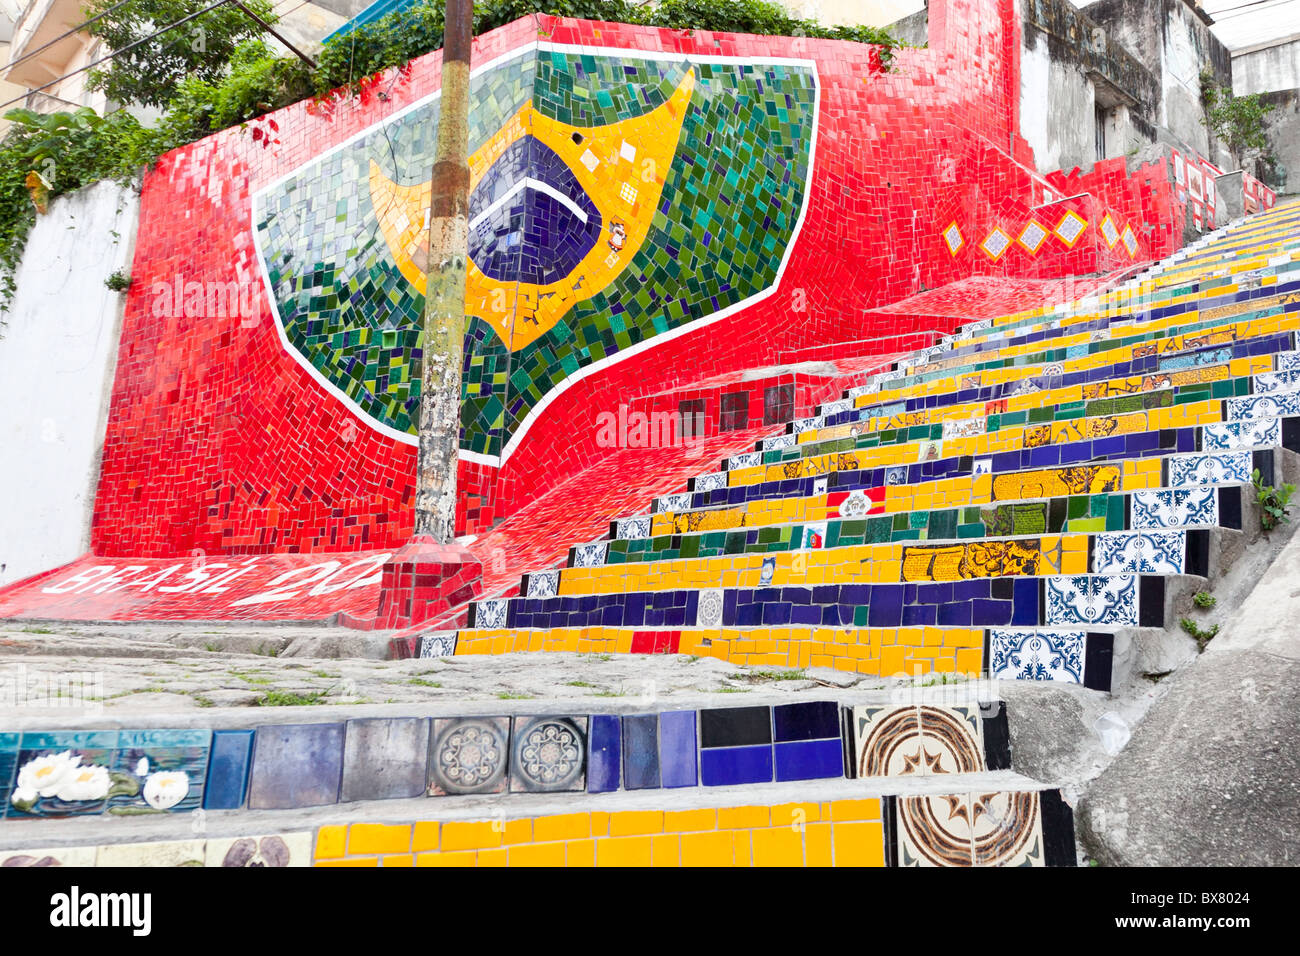 Une mosaïque sur le drapeau brésilien Escadaria Selarón à Rio de Janeiro, Brésil Banque D'Images